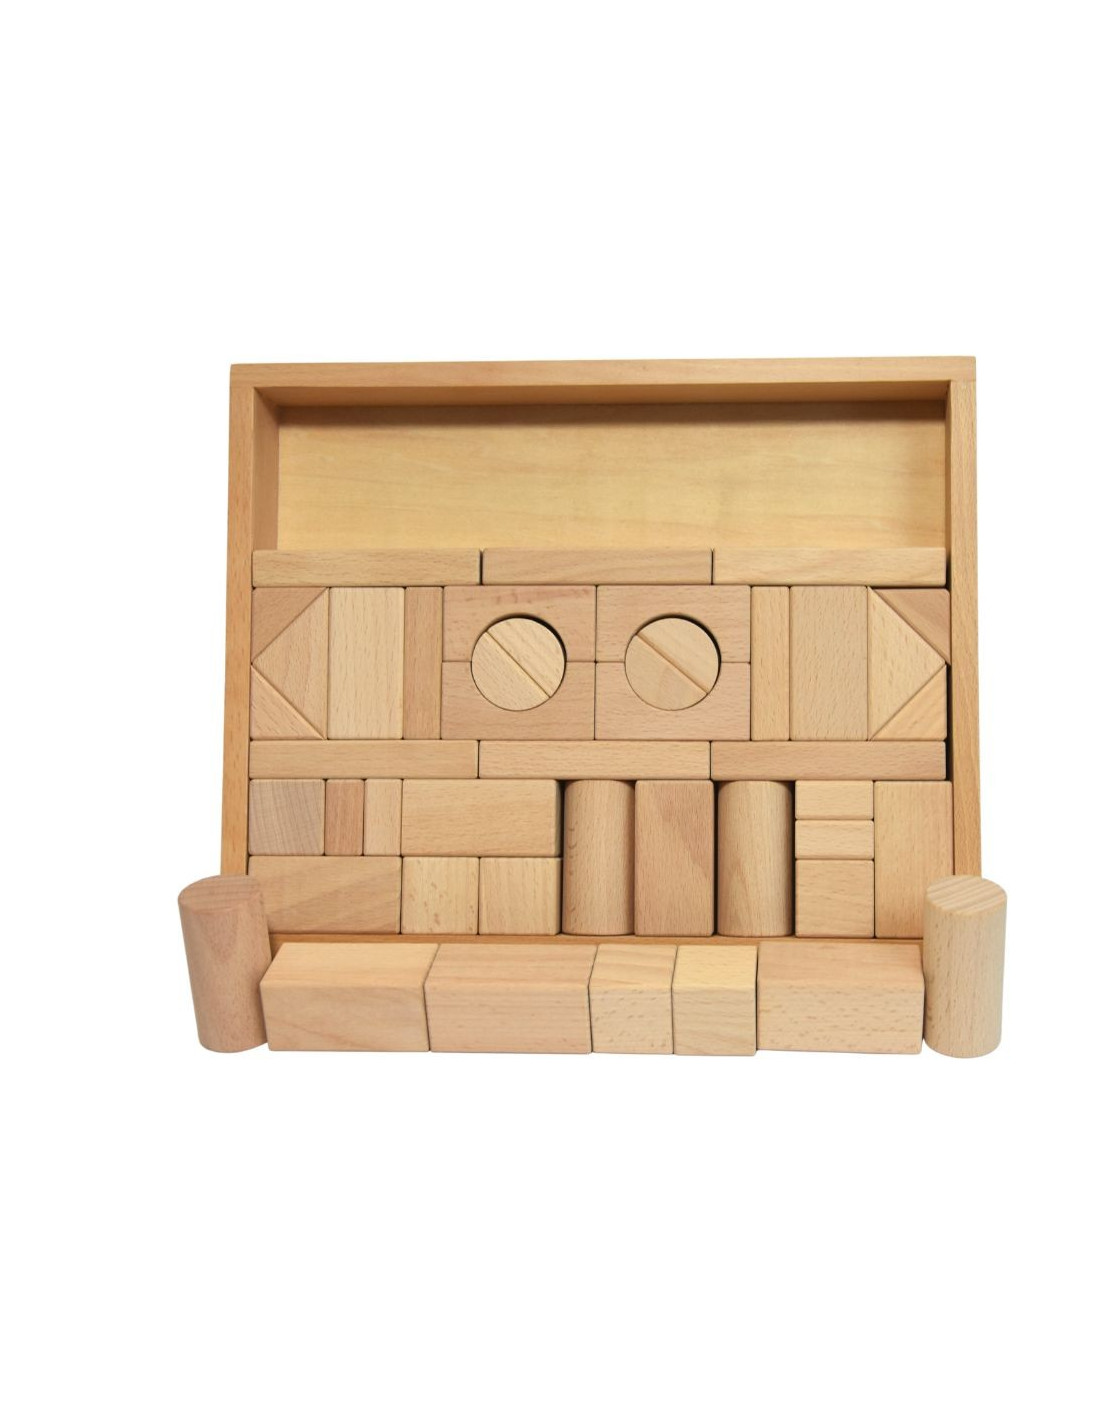 Puzzle des formes, jeu d'encastement en bois naturel de Wooden story